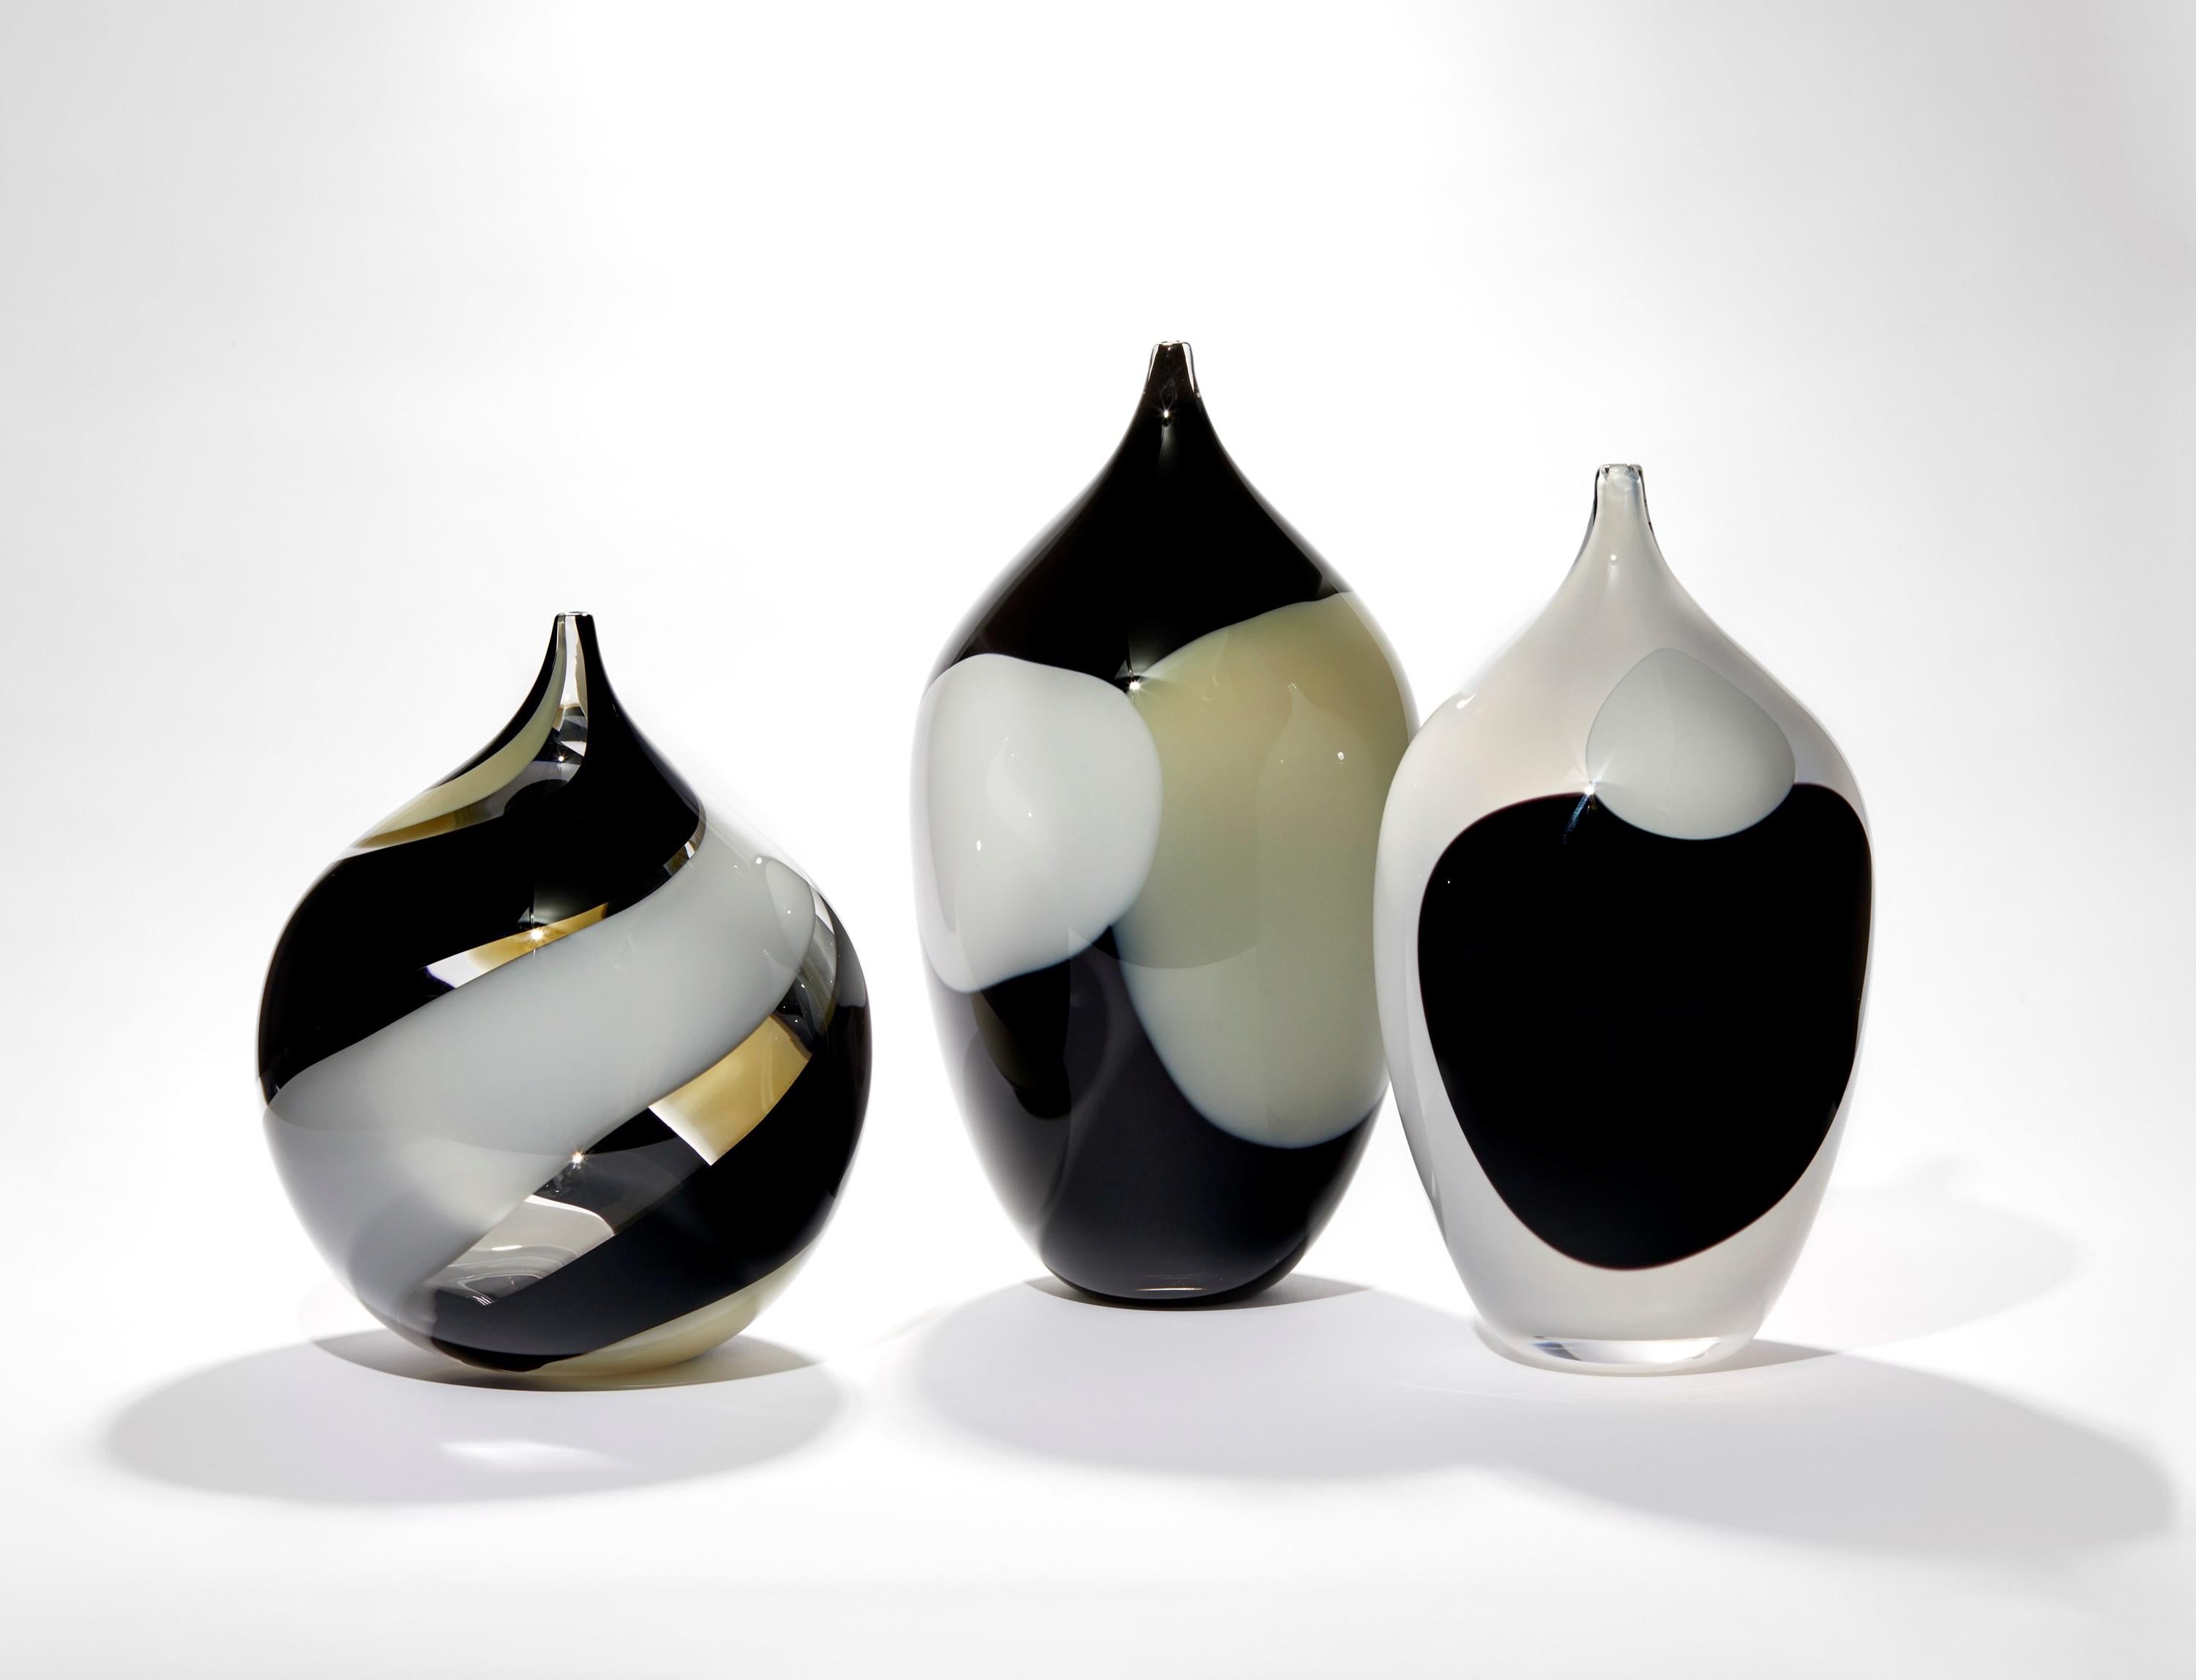 Vaso de cristal soplado a mano Swirl, transparente, negro, ámbar suave y blanco, de Gunnel Sahlin Moderno orgánico